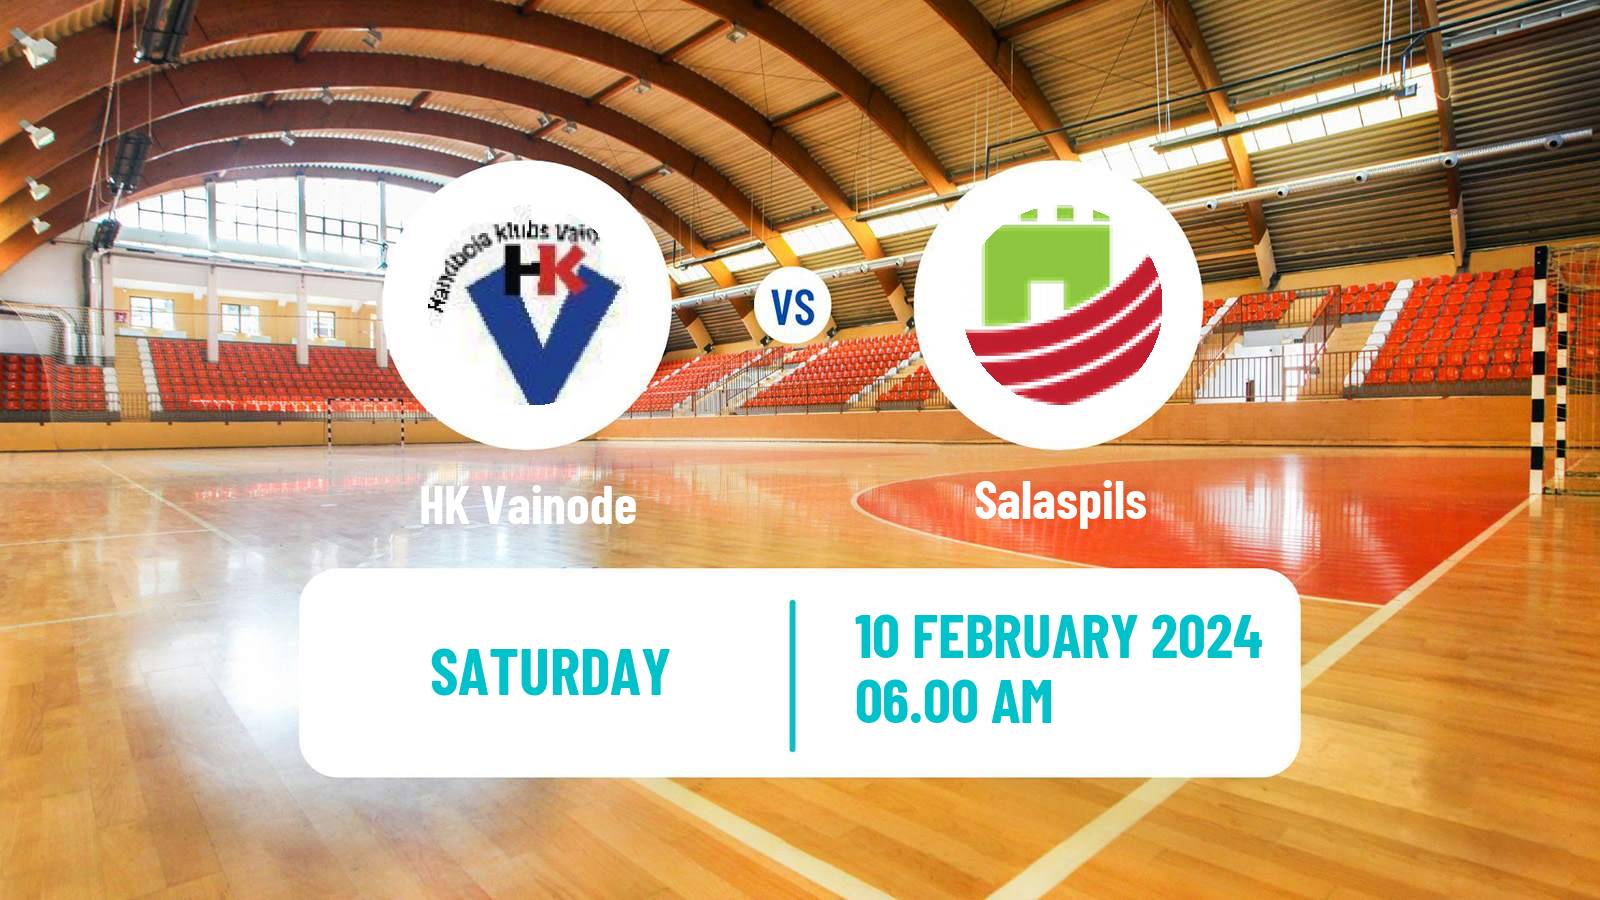 Handball Latvian Virsliga Handball Vainode - Salaspils